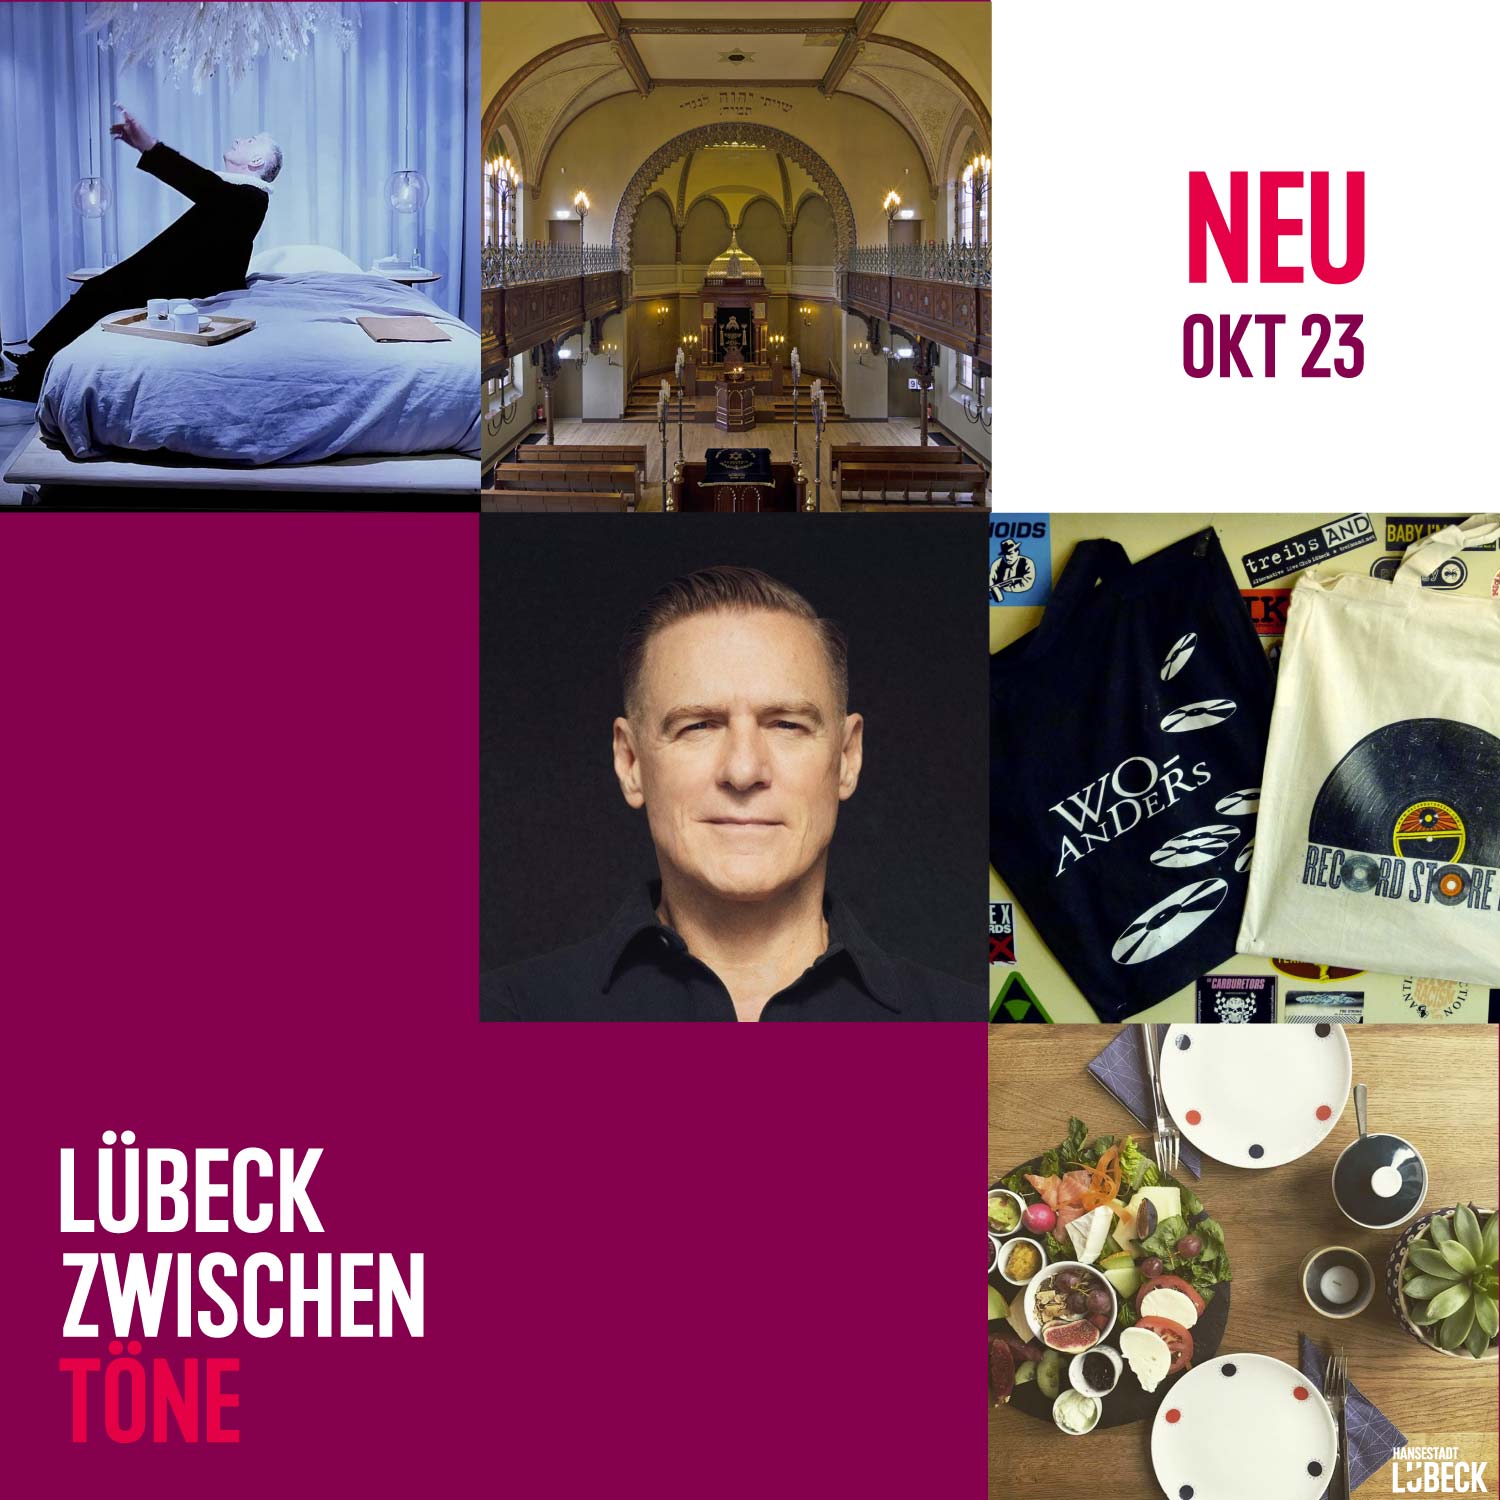 Bryan Adams, Heilige Geschäfte, Schallplatten und jüdische Geschichte im Oktober in Lübeck